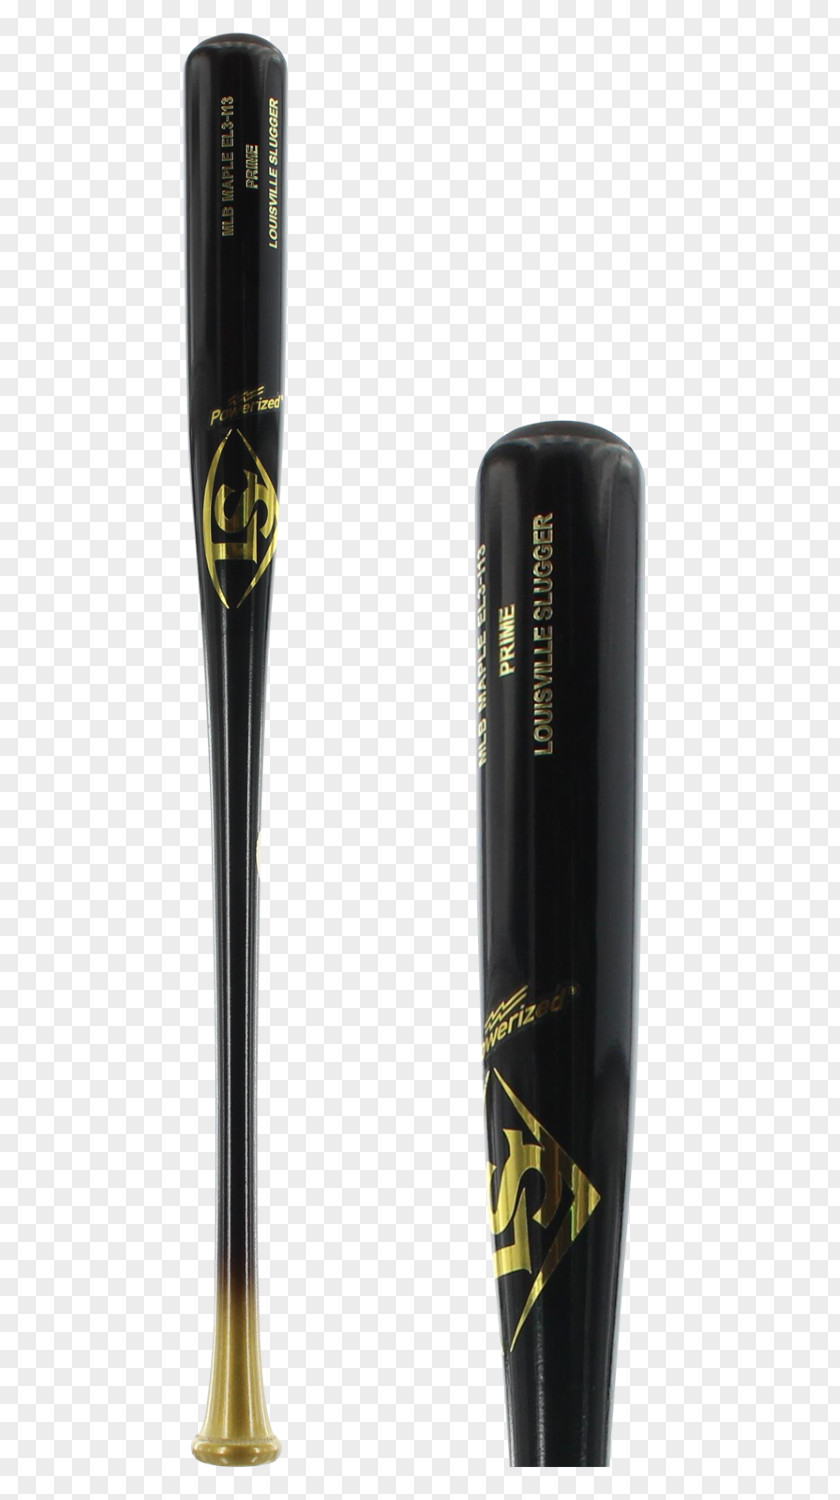 Baseball Bats Hillerich & Bradsby Composite Bat Batting PNG